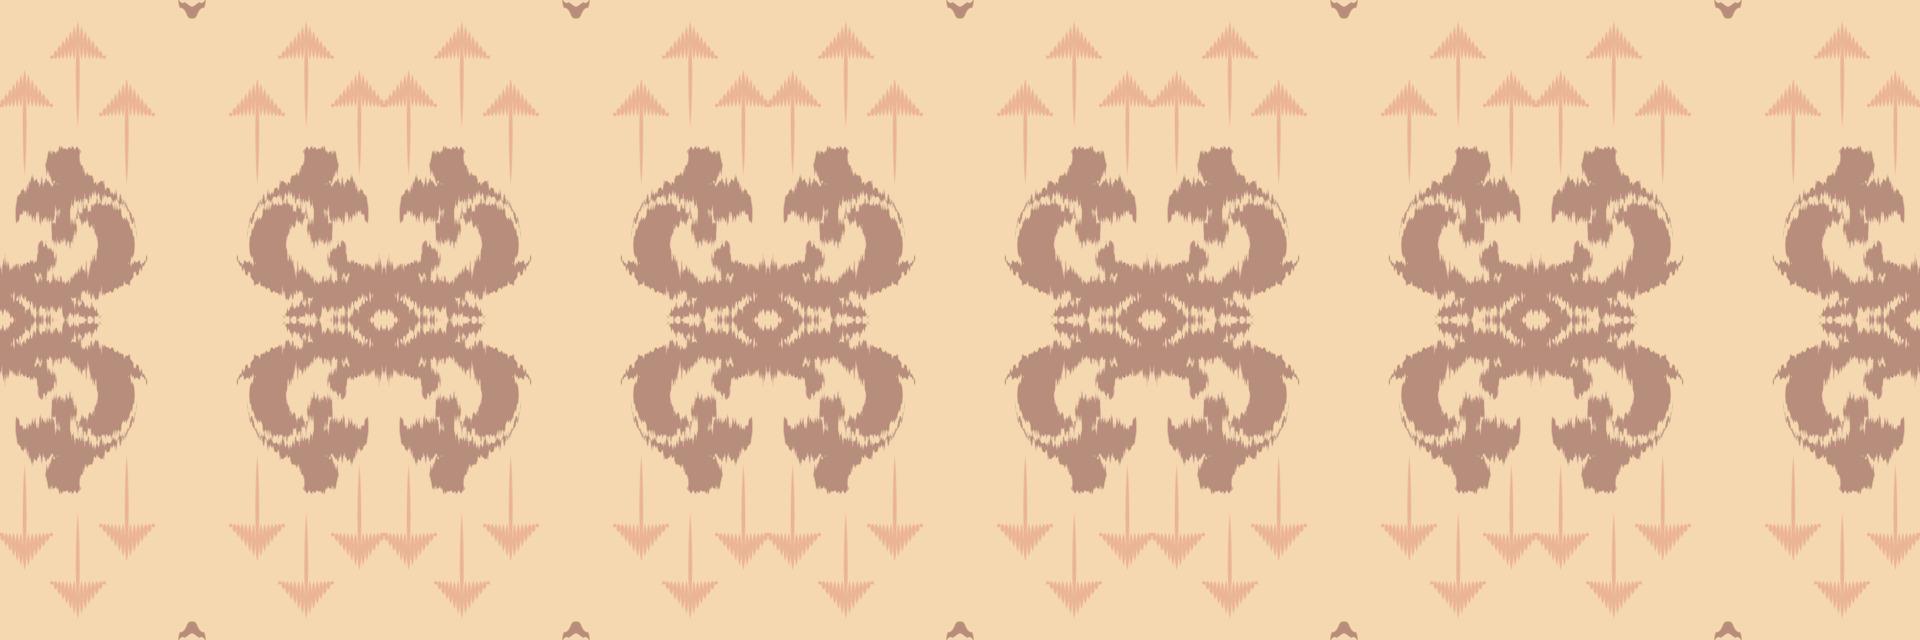 batik têxtil étnico ikat moldura sem costura padrão design de vetor digital para impressão saree kurti borneo tecido borda escova símbolos amostras roupas de festa